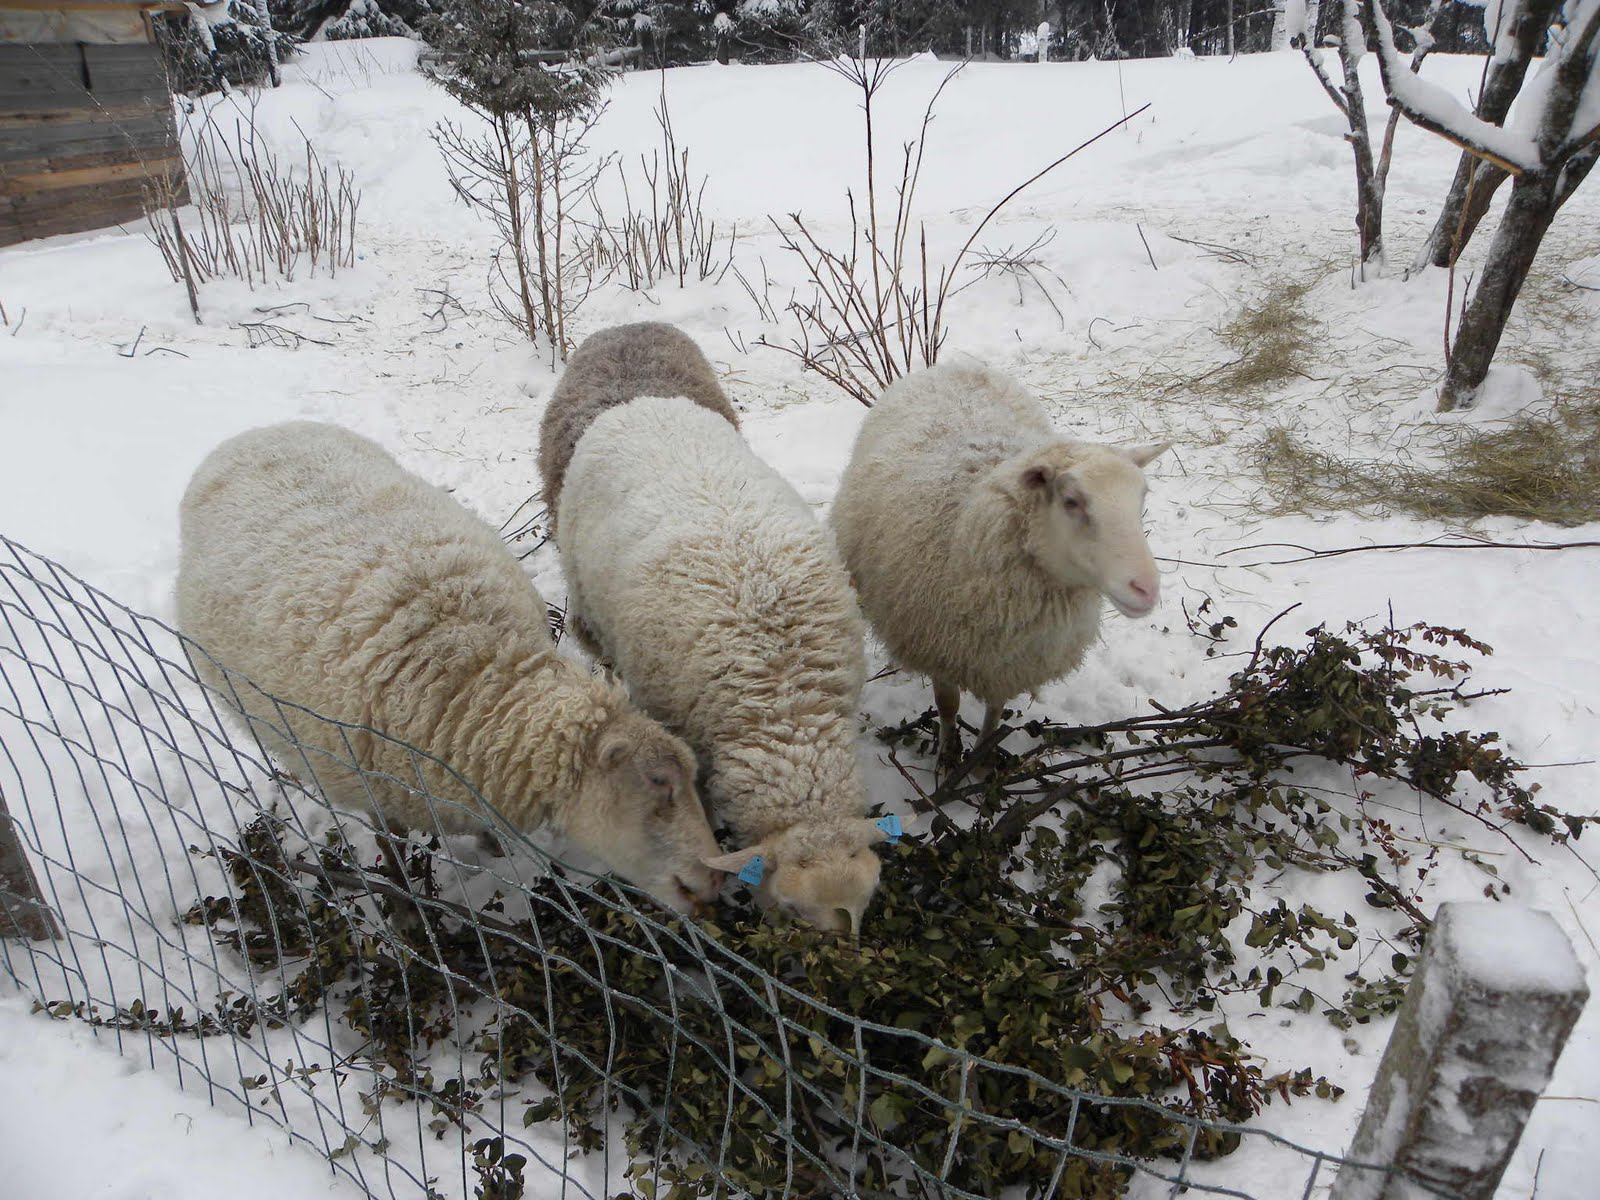 Tiineät (tiineät) lampaat: kuinka monta karitsaa voi olla yhdessä karitsassa, tiineyden tiheys